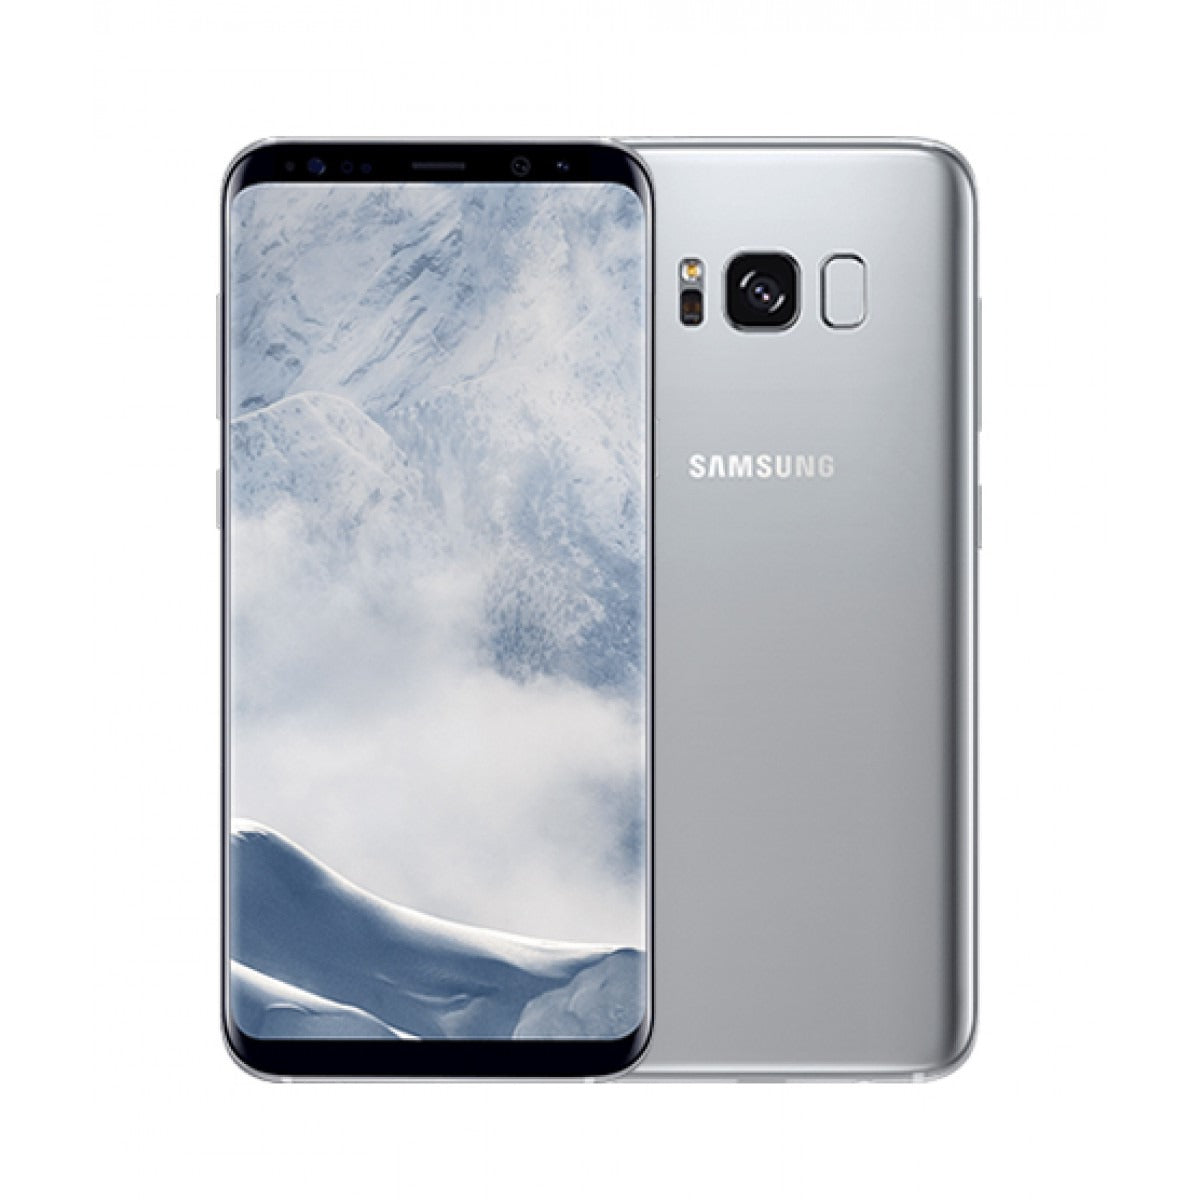 Samsung Galaxy S8 - 64 GB - Arctic Silver - Straight Talk - CDMA